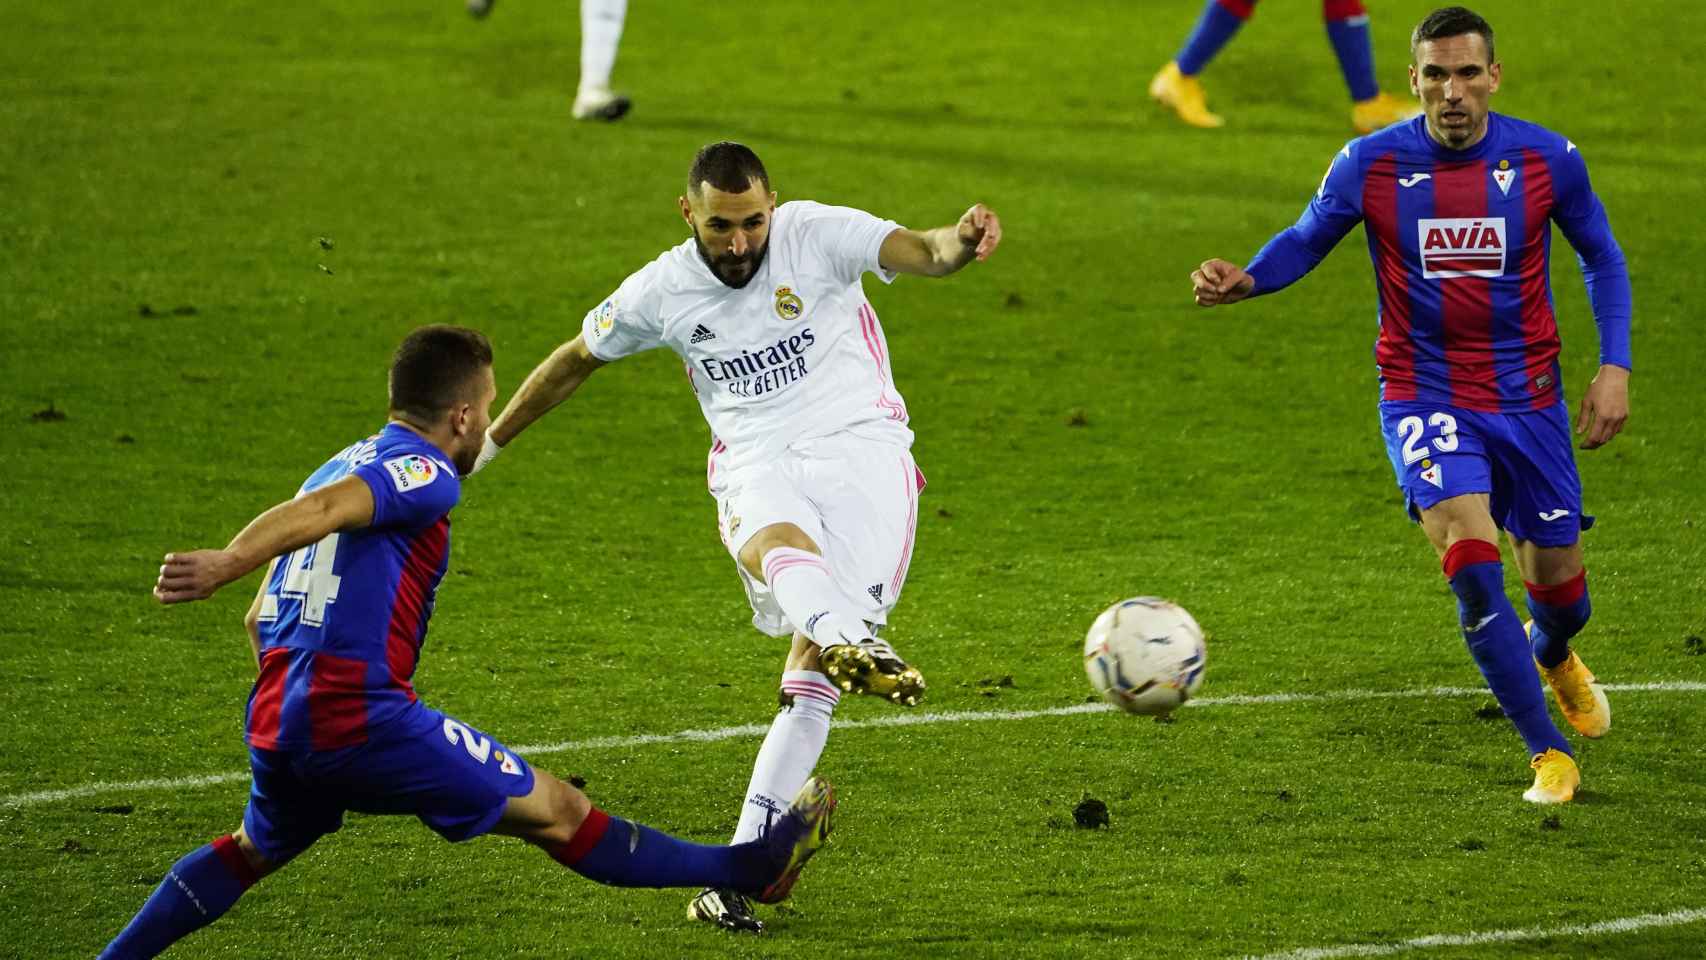 Benzema dispara a la portería del Eibar presionado por dos jugadores rivales